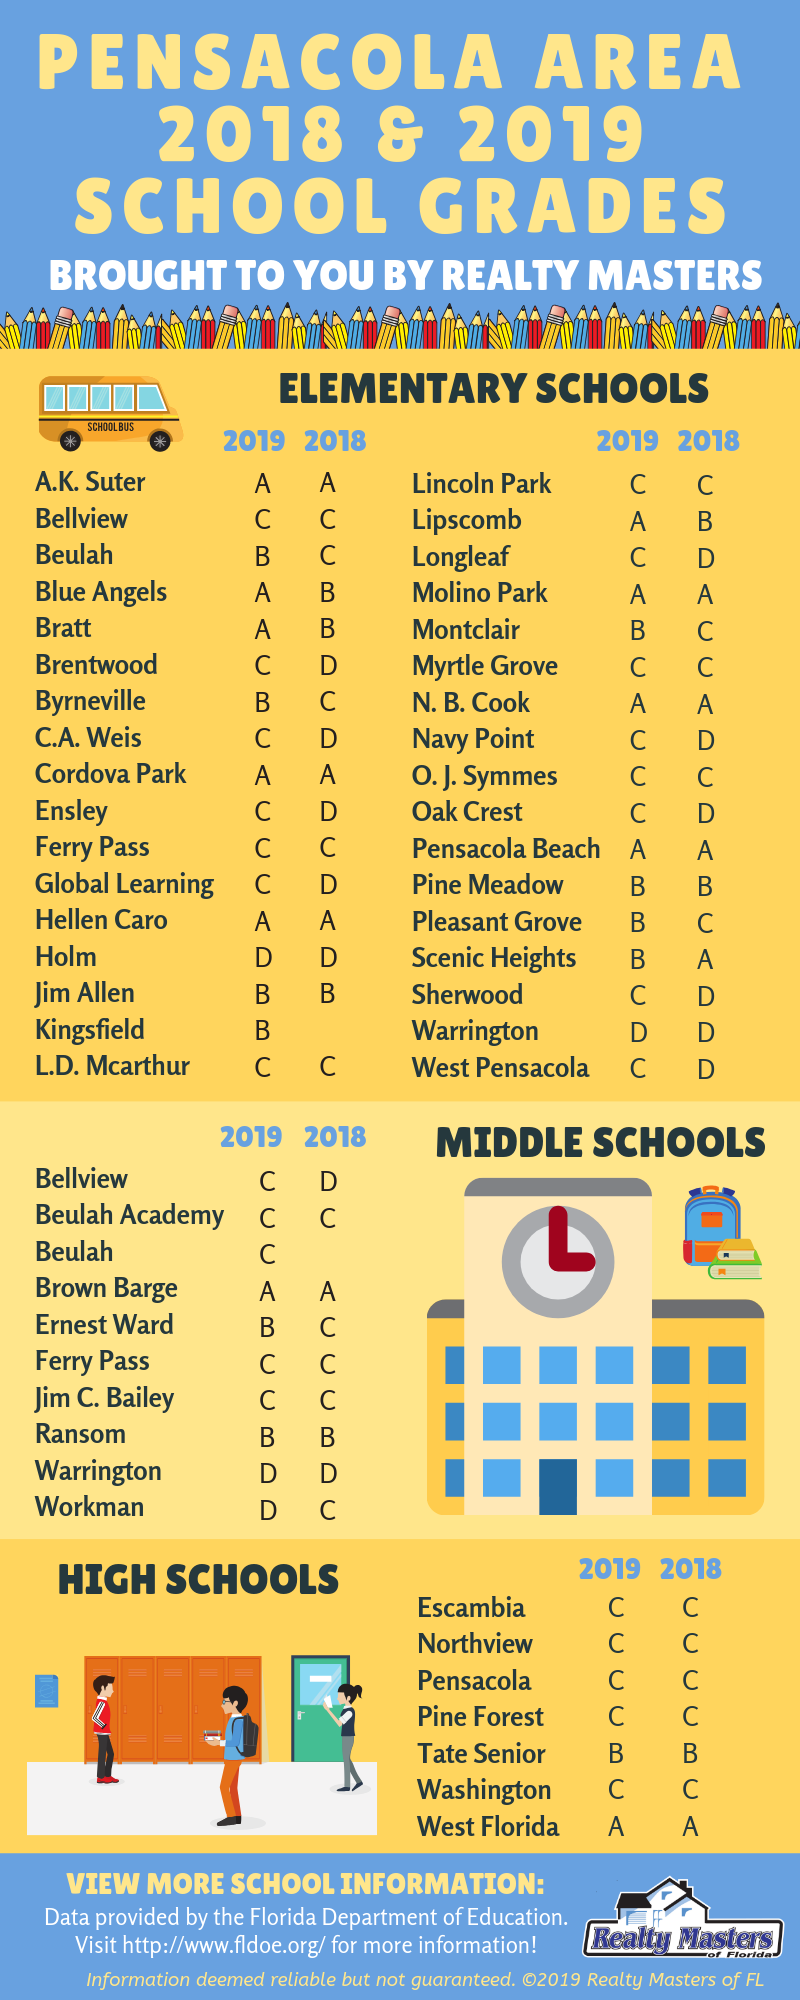 Pensacola area school grades and information